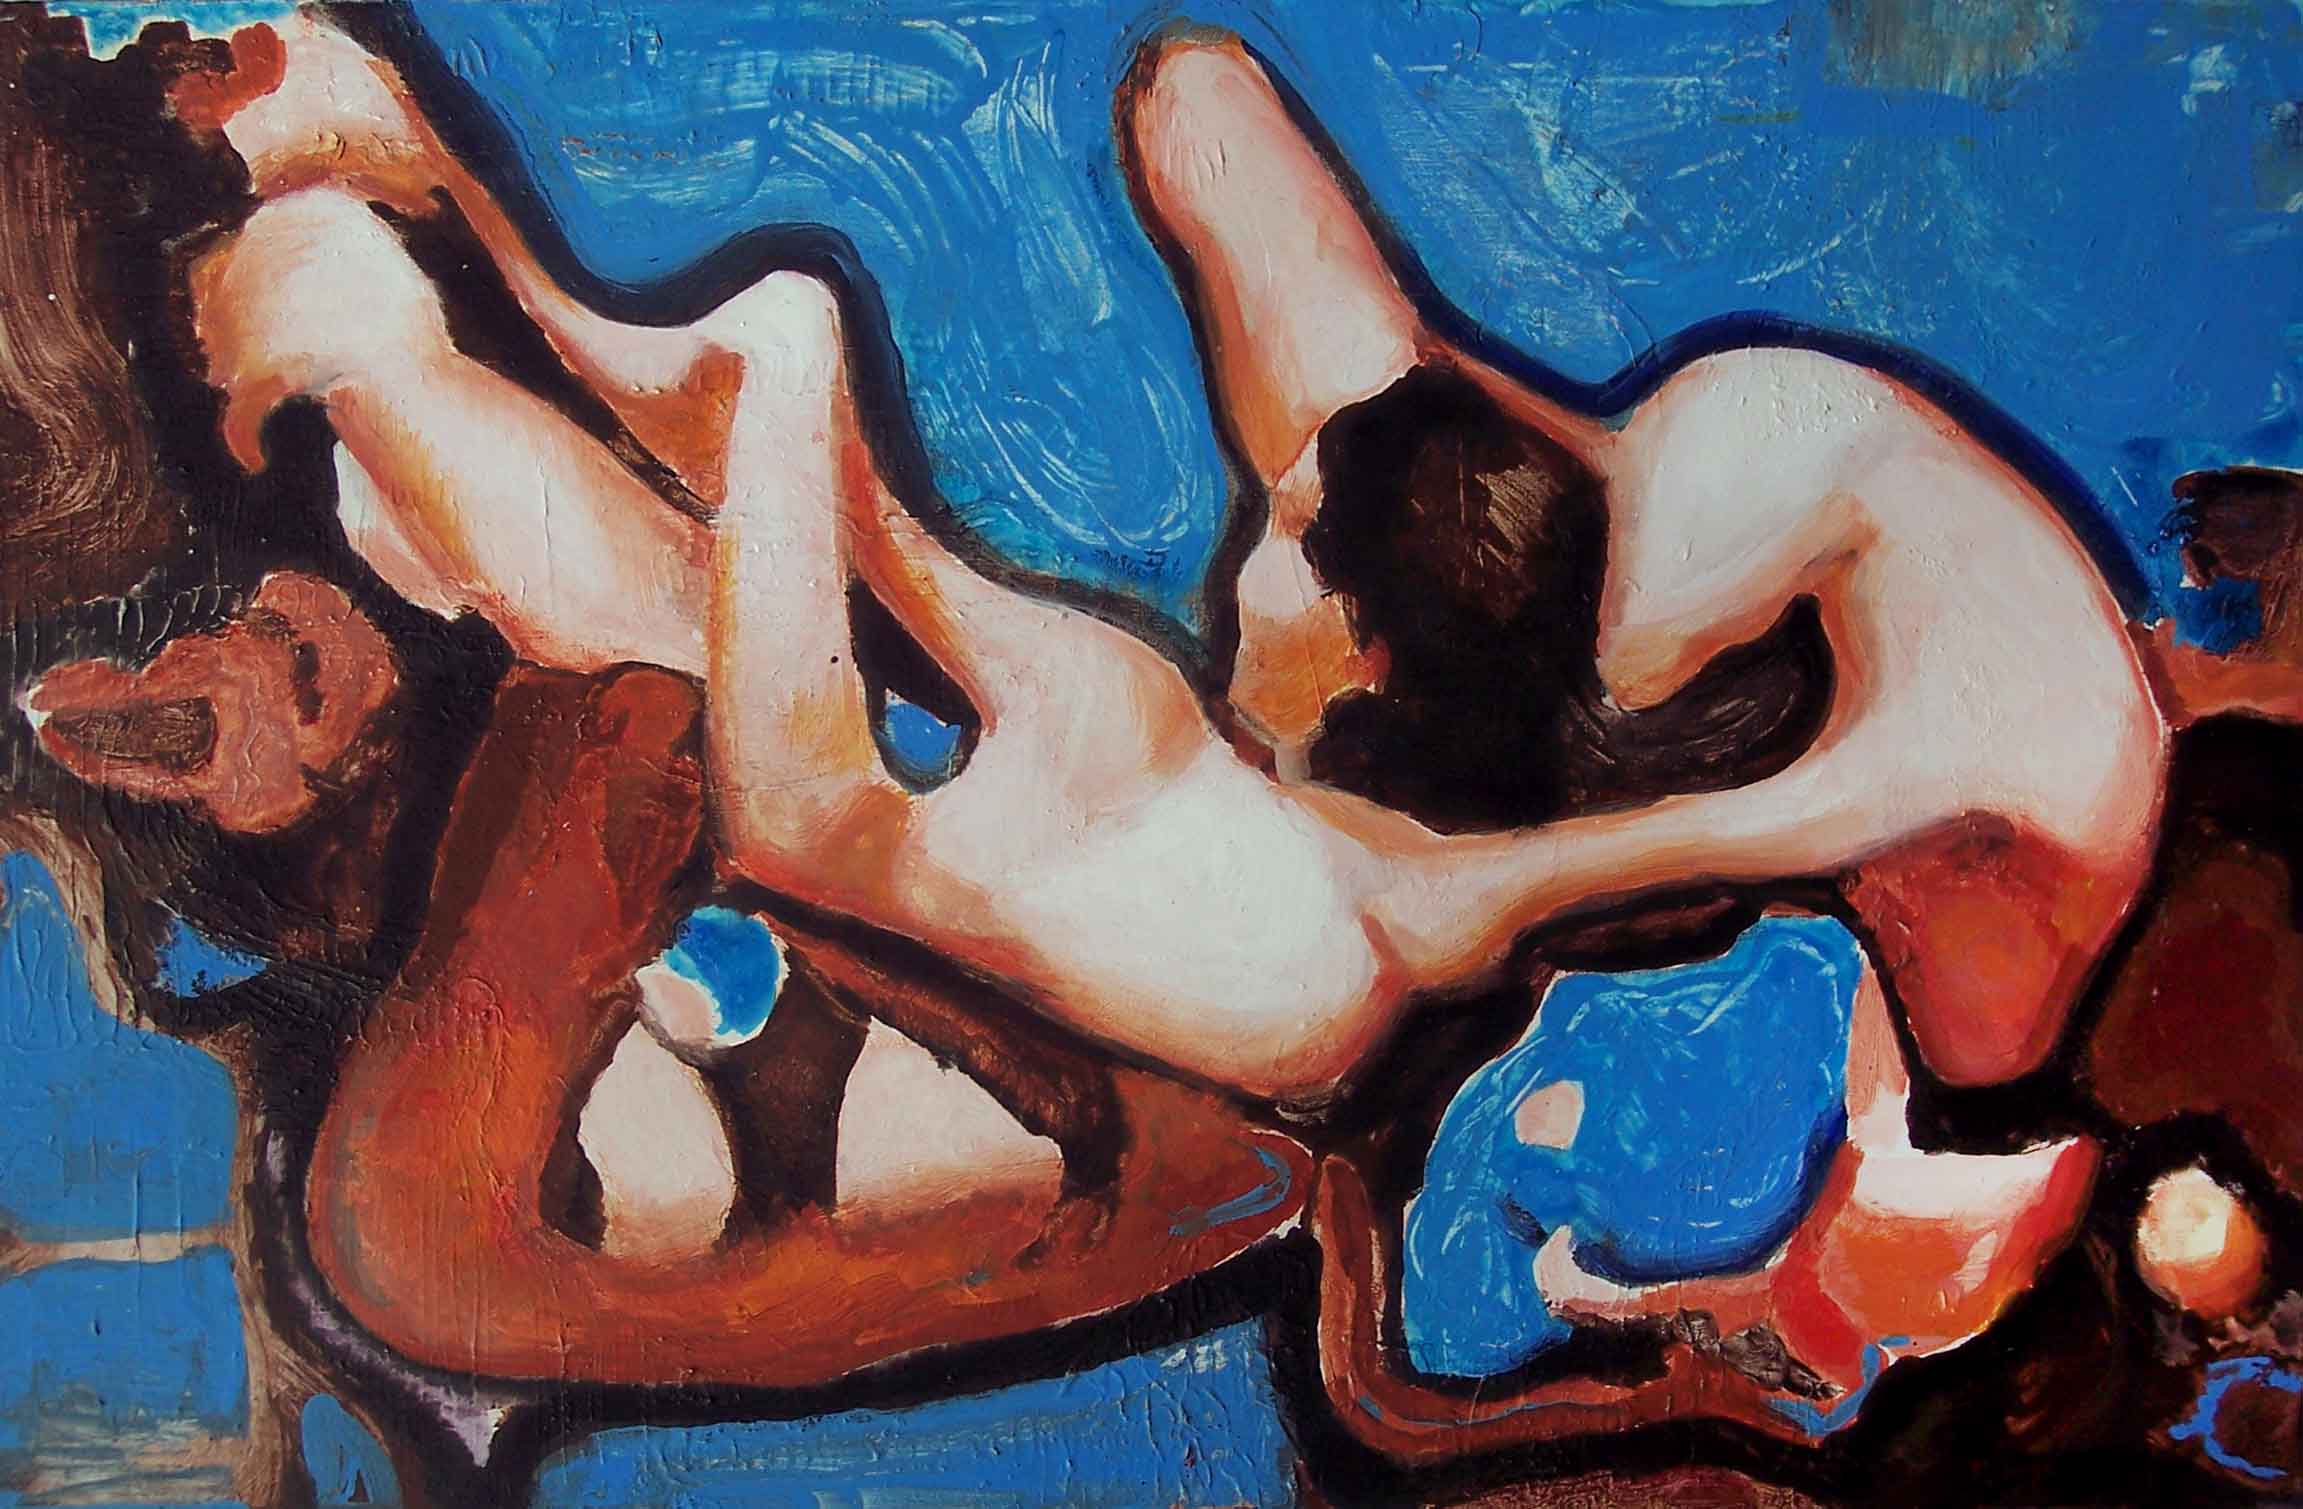 Fabio Modica | Love Games - cm 60x90 | 23,6x35,4 inches - acrylic on canvas - 2007